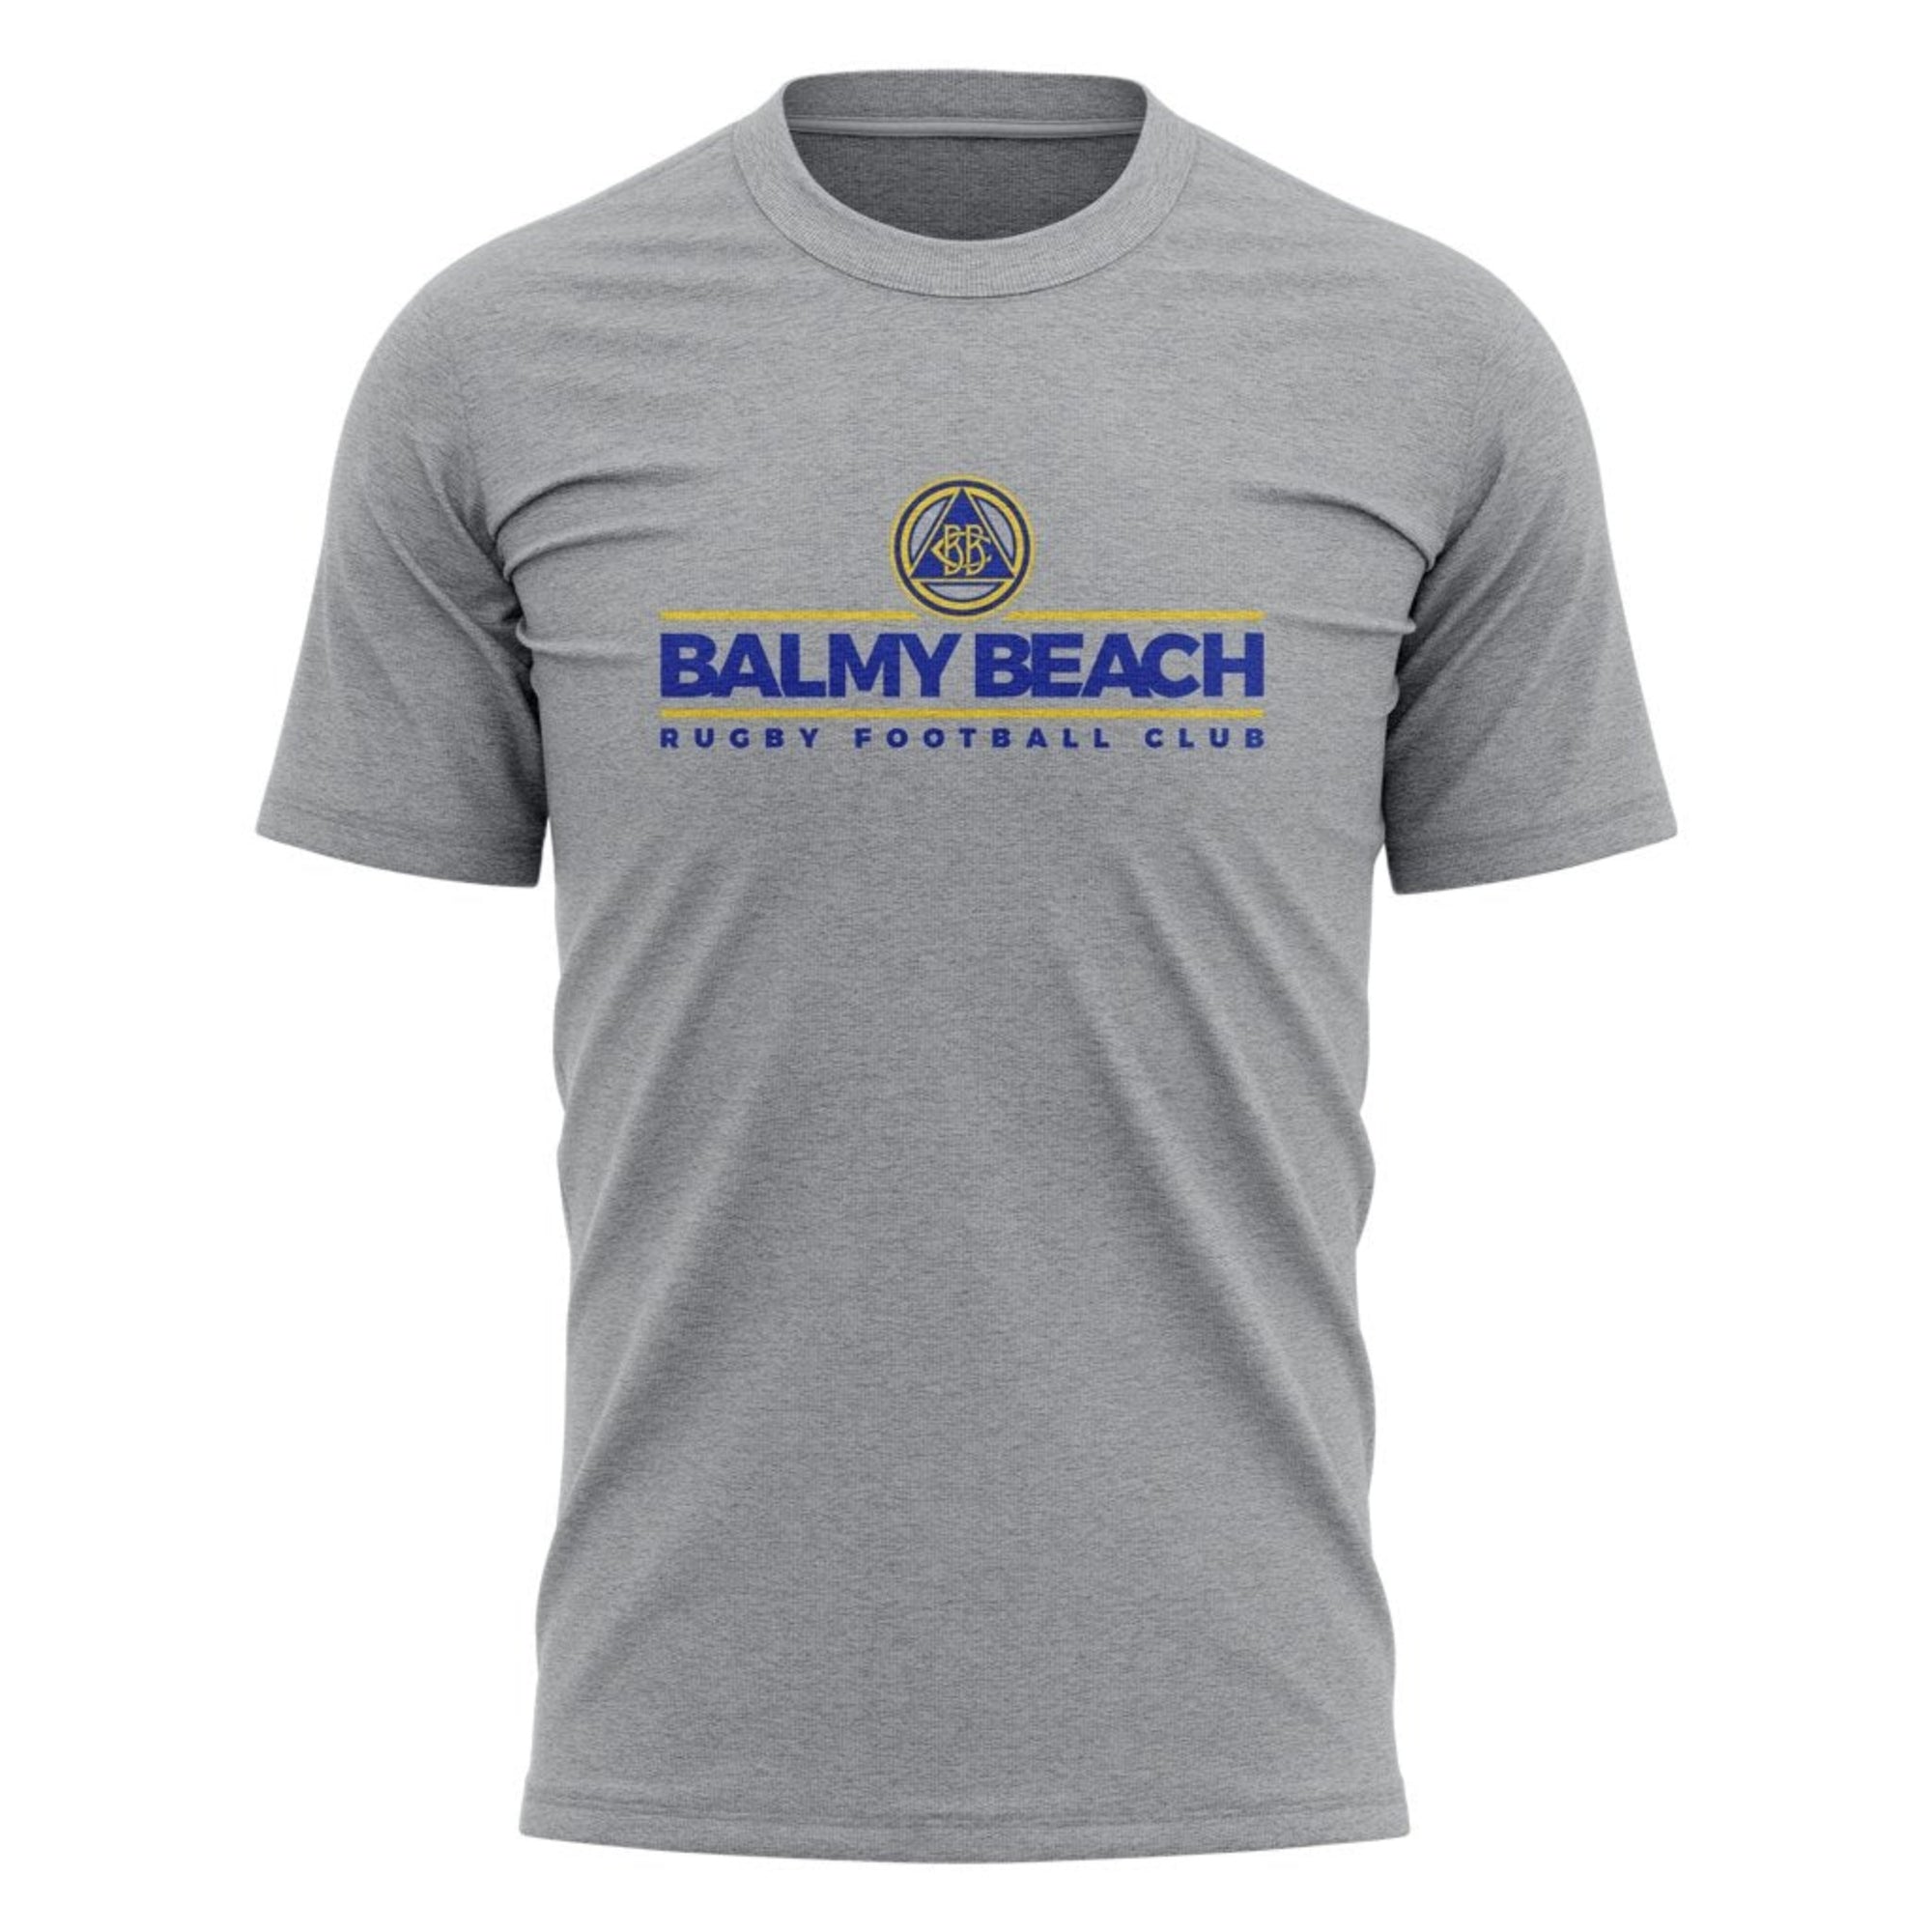 Balmy Beach "Club" Tee - Youth Sizing XS-XL - Athletic Grey